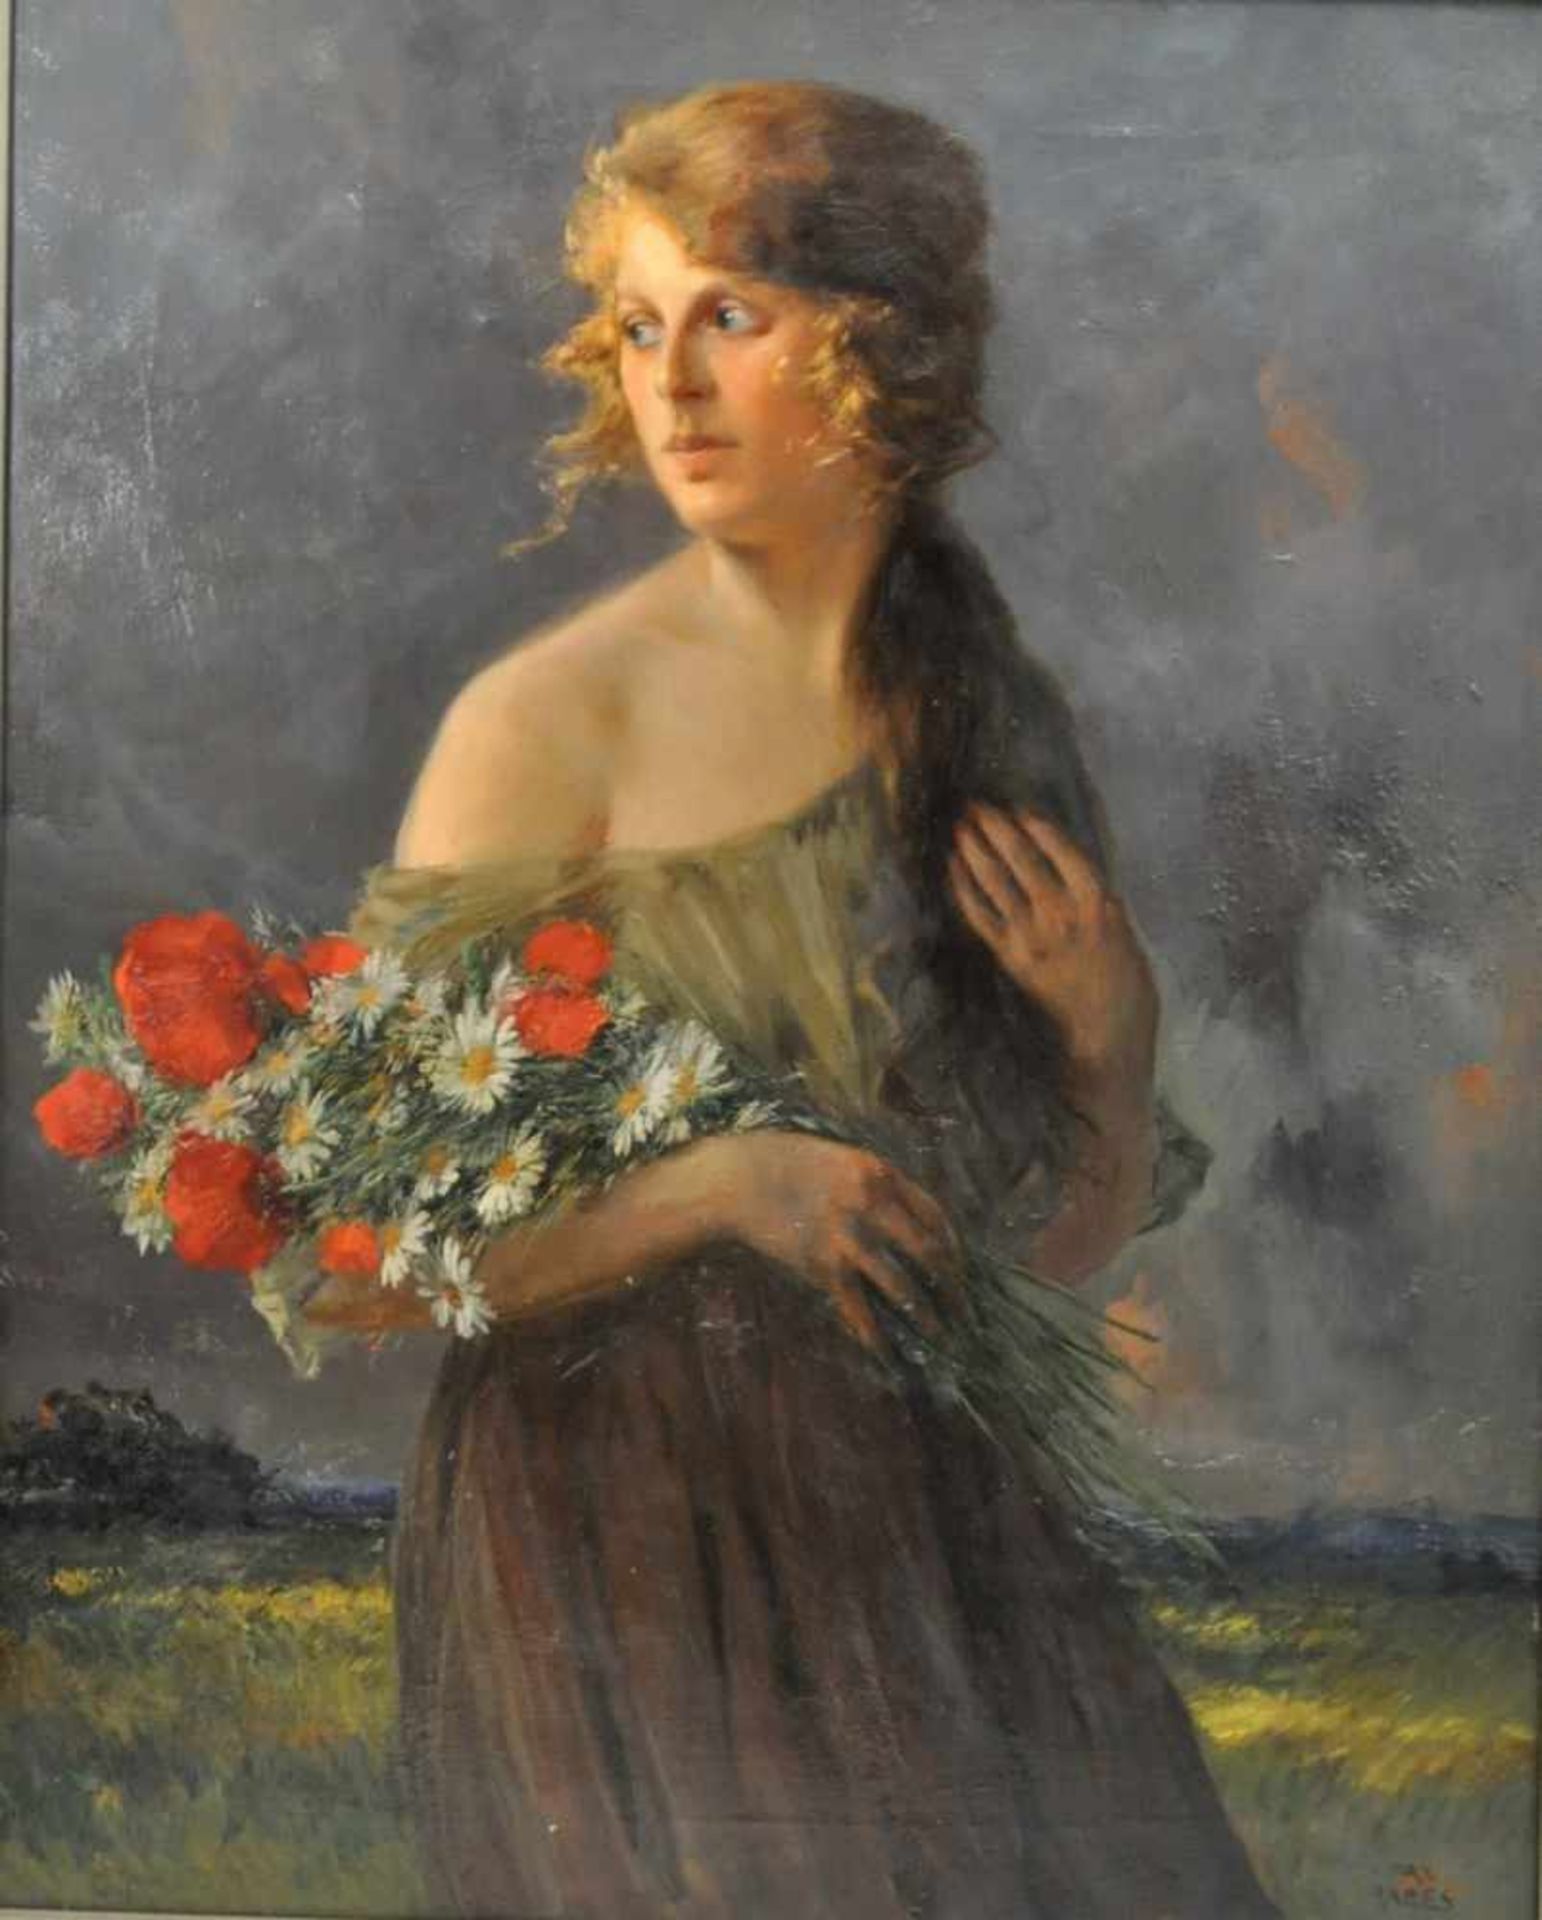 Rabes, Max Friedrich (1868 - 1944) "Junge Frau mit Feldblumenstrauss", Öl auf Leinwand, 101 x 81 cm,